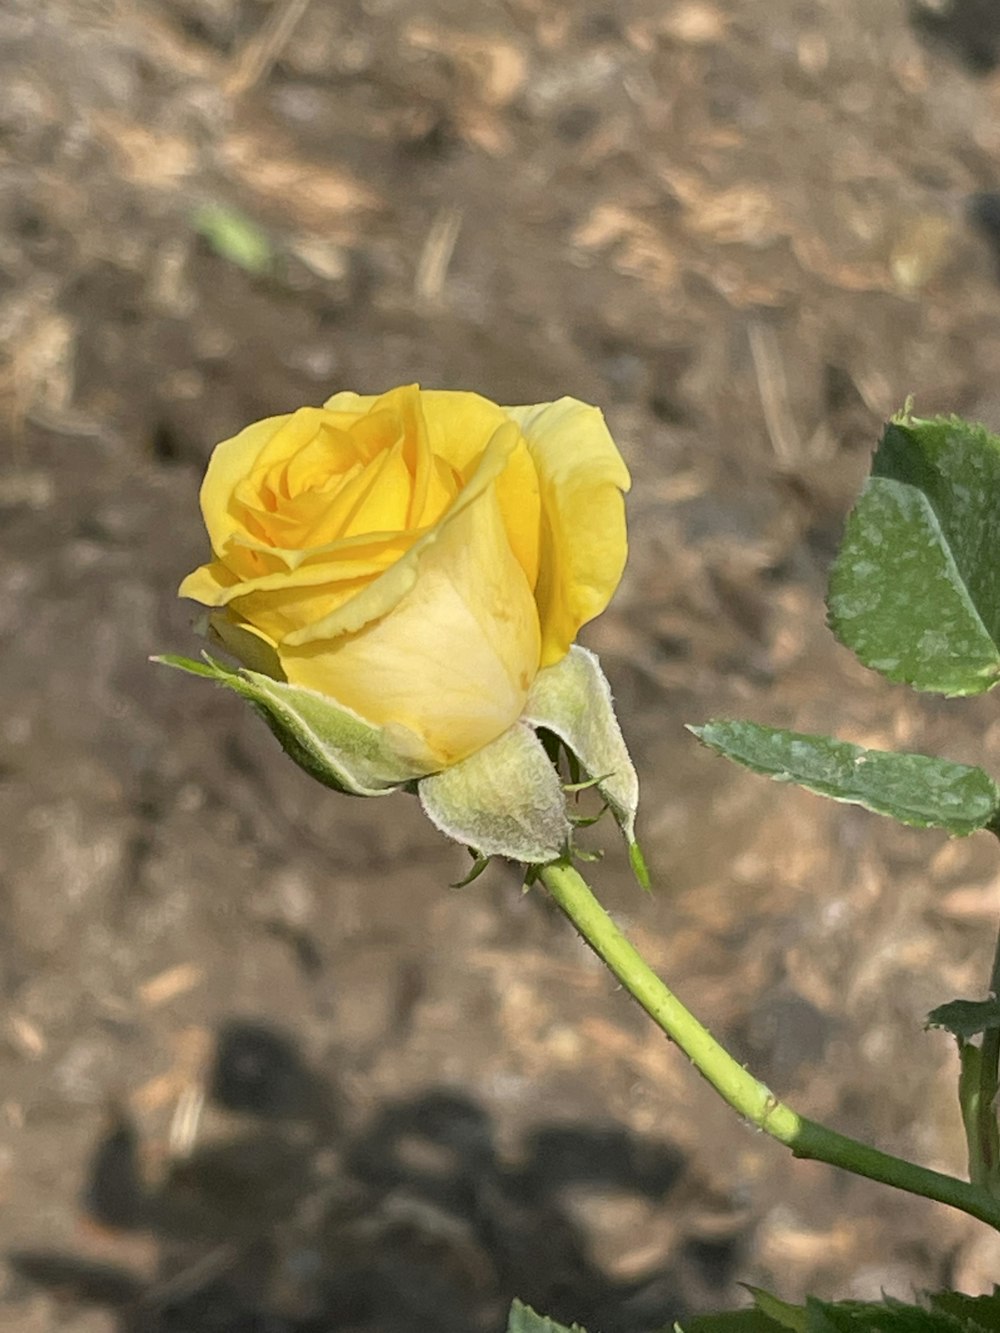 a single yellow rose budding in a garden